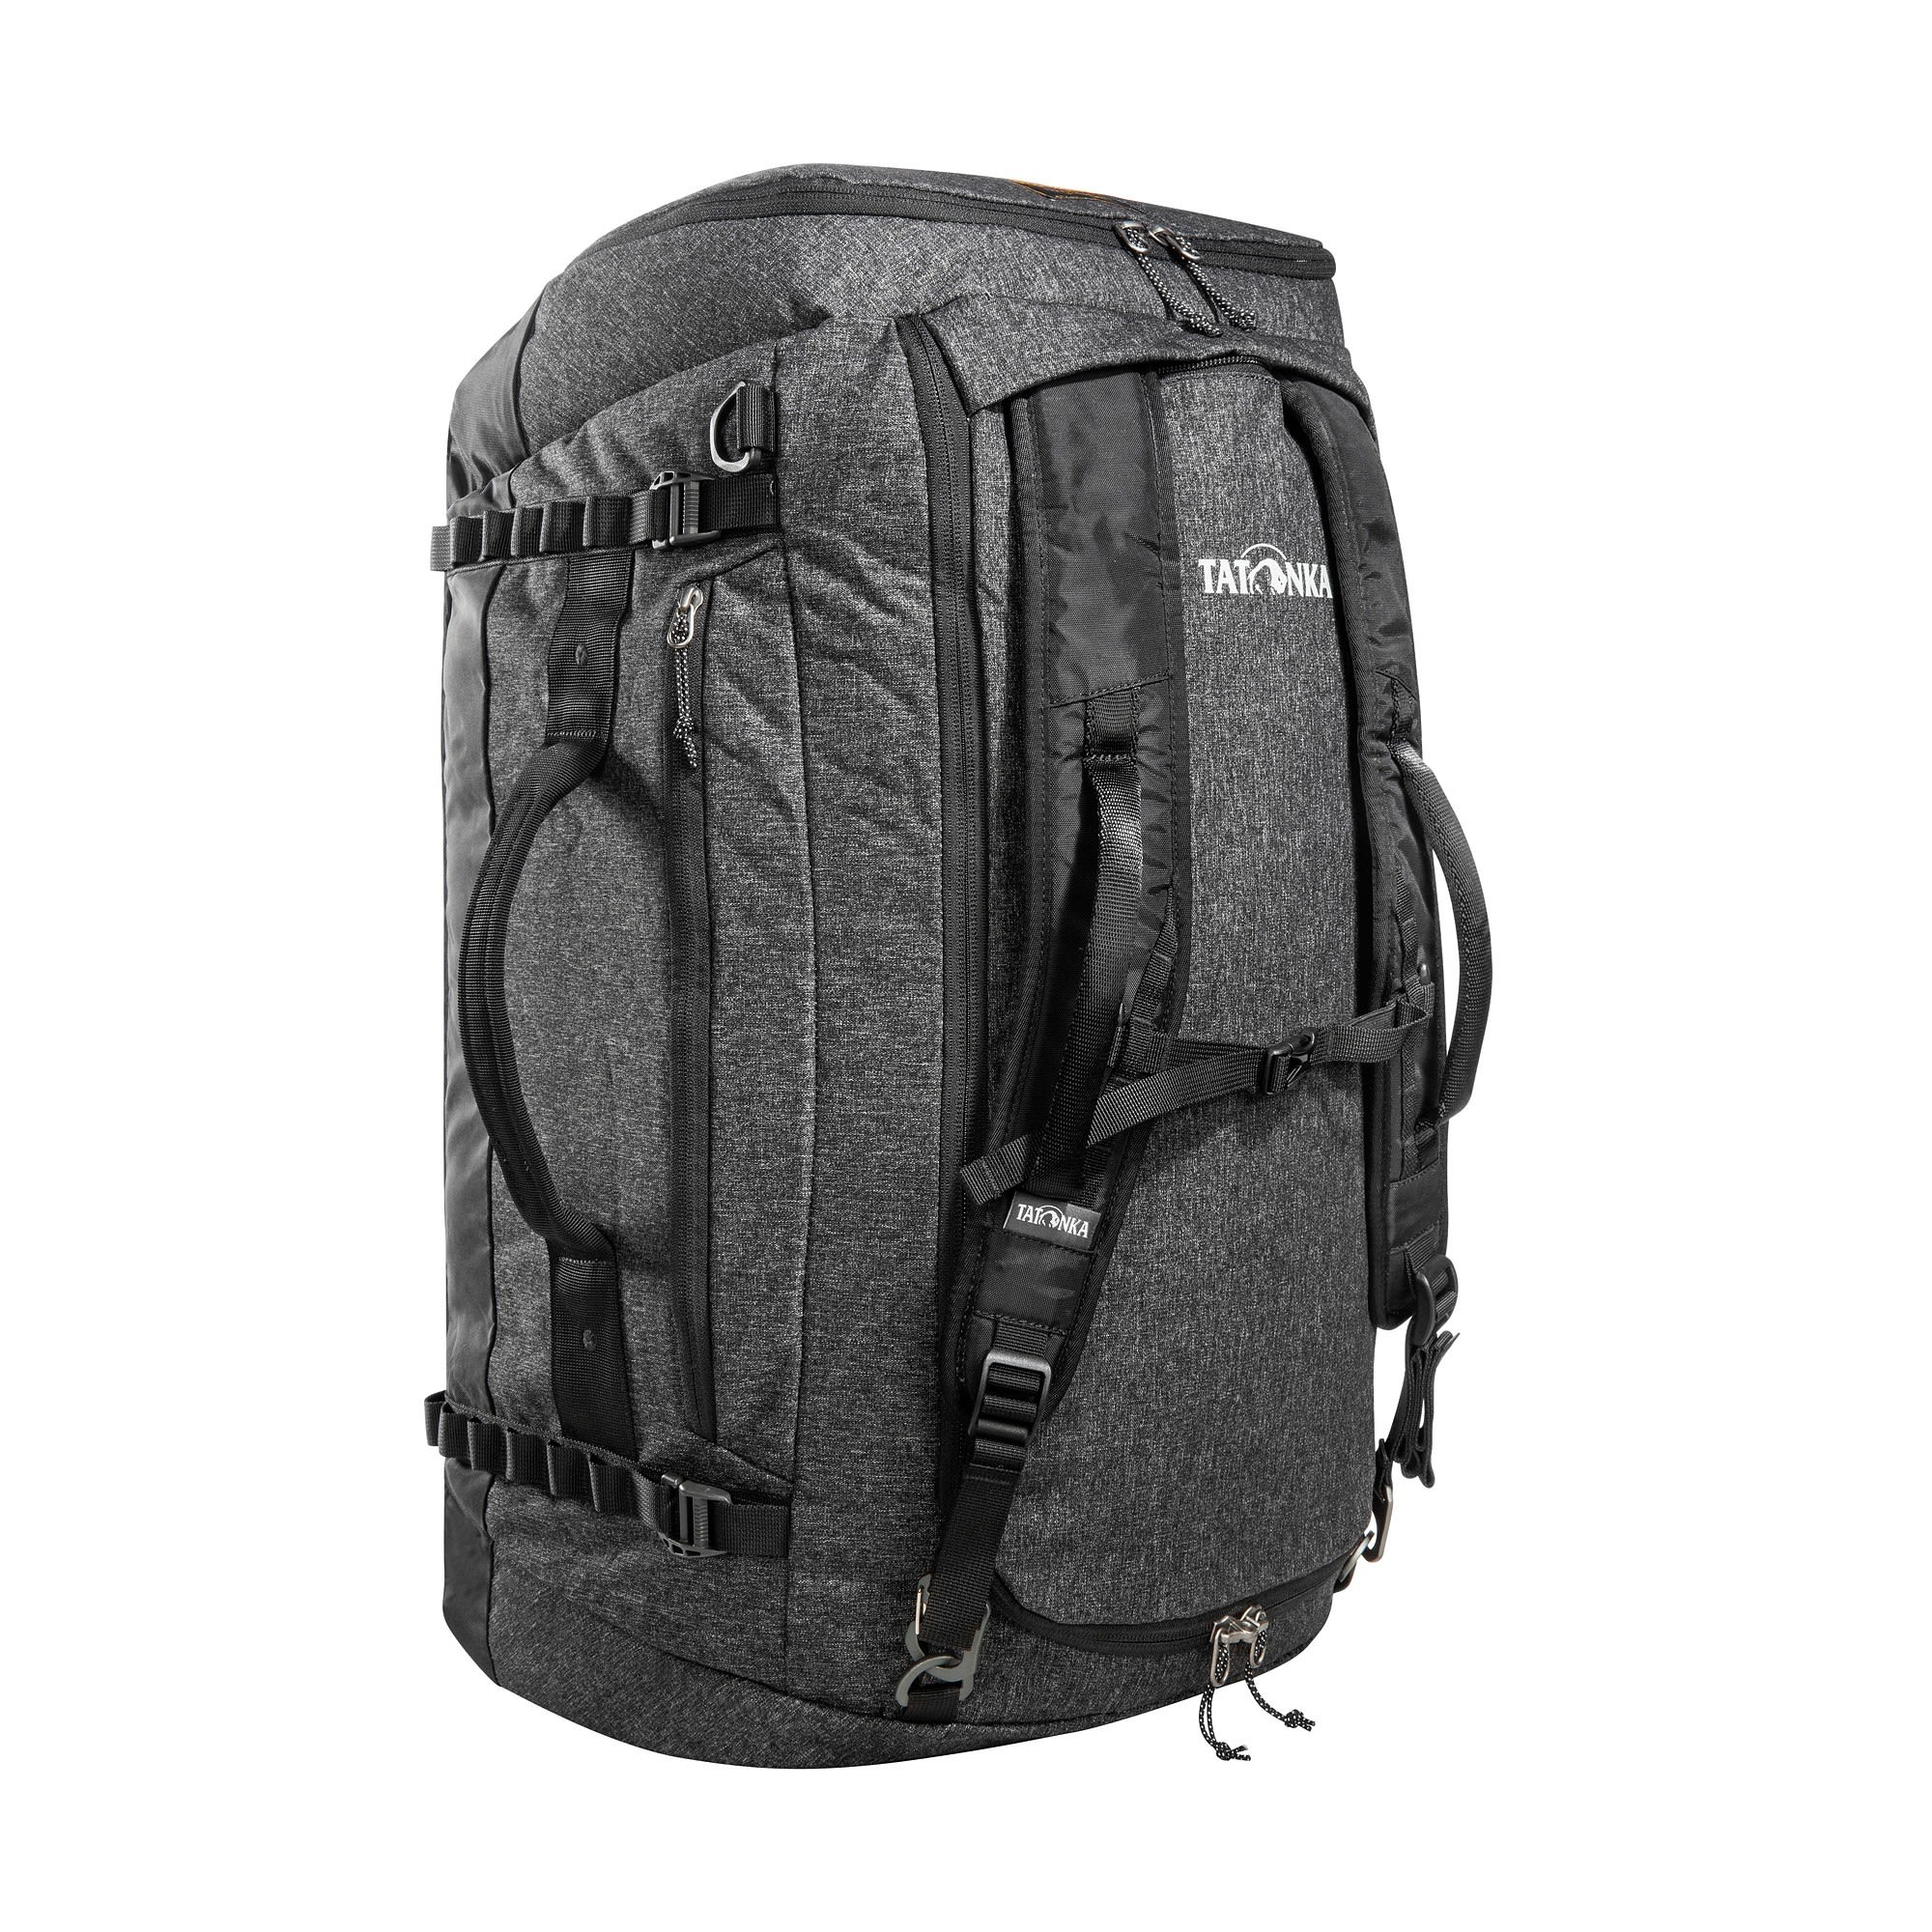 Tatonka Duffle Bag 65 Schwarz- Reisetaschen- Grsse 65l - Farbe Black